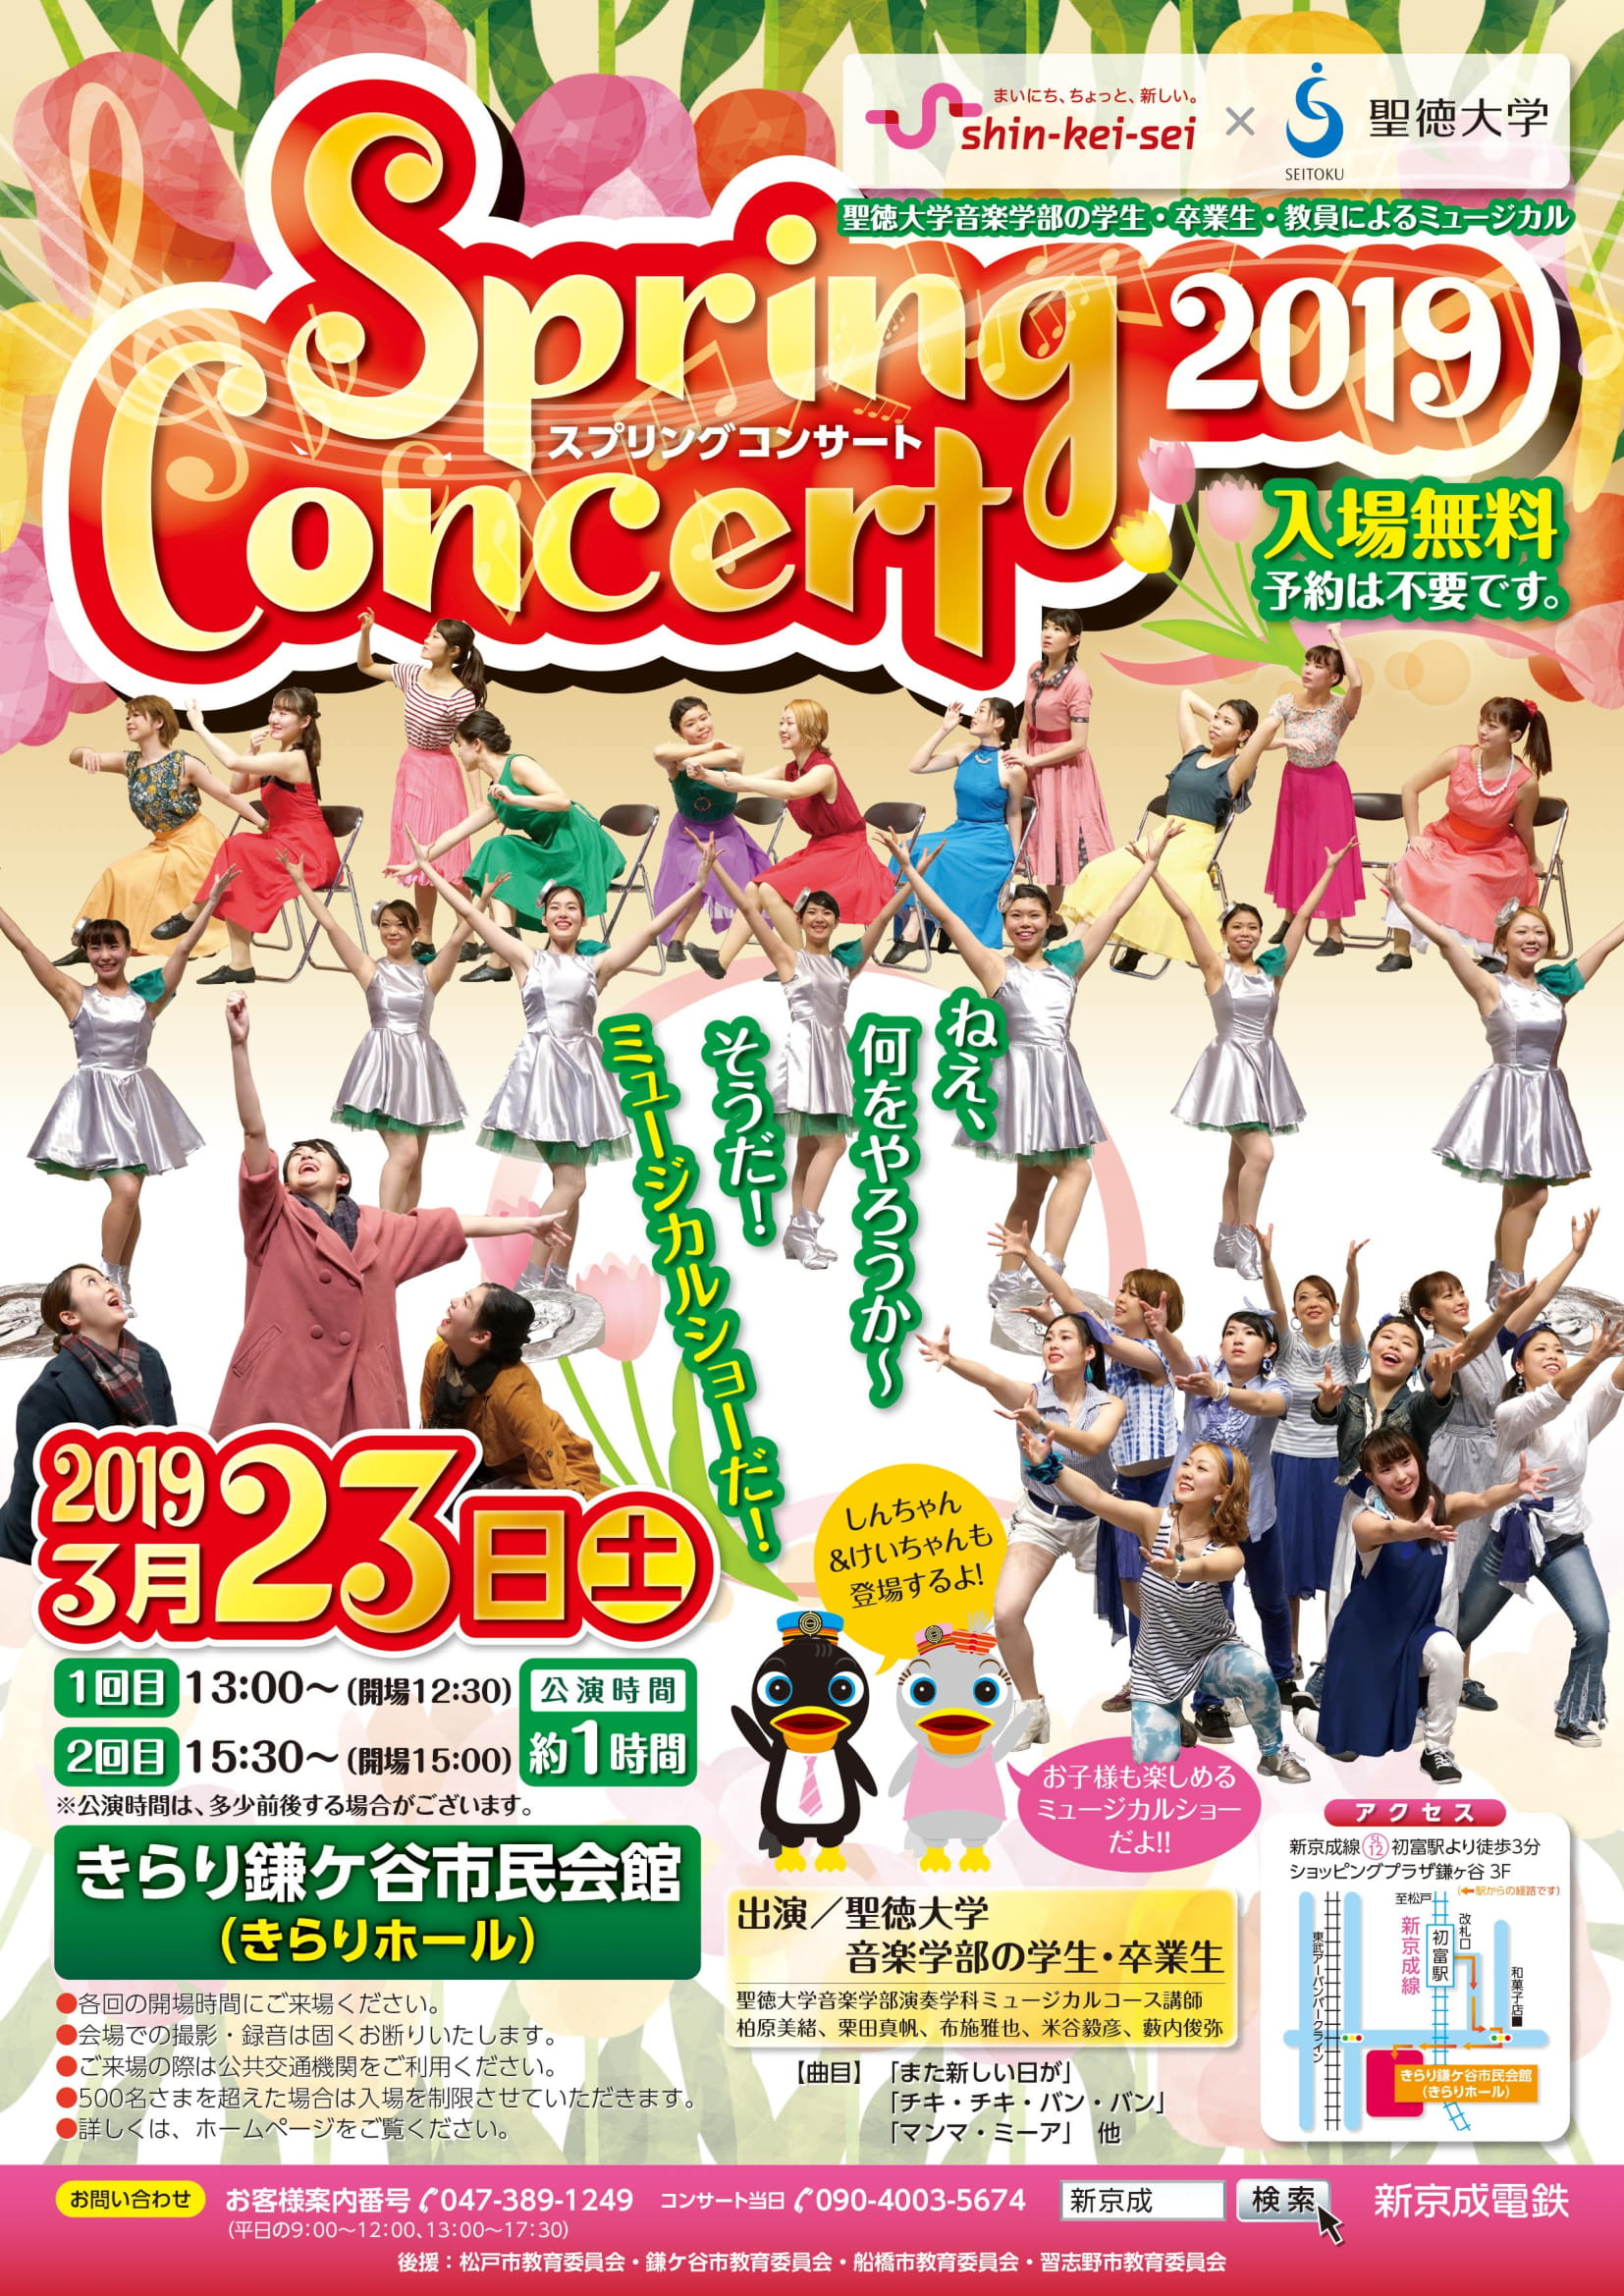 本日3/23(土)、新京成電鉄×聖徳大学「スプリングコンサート2019」を開催します！